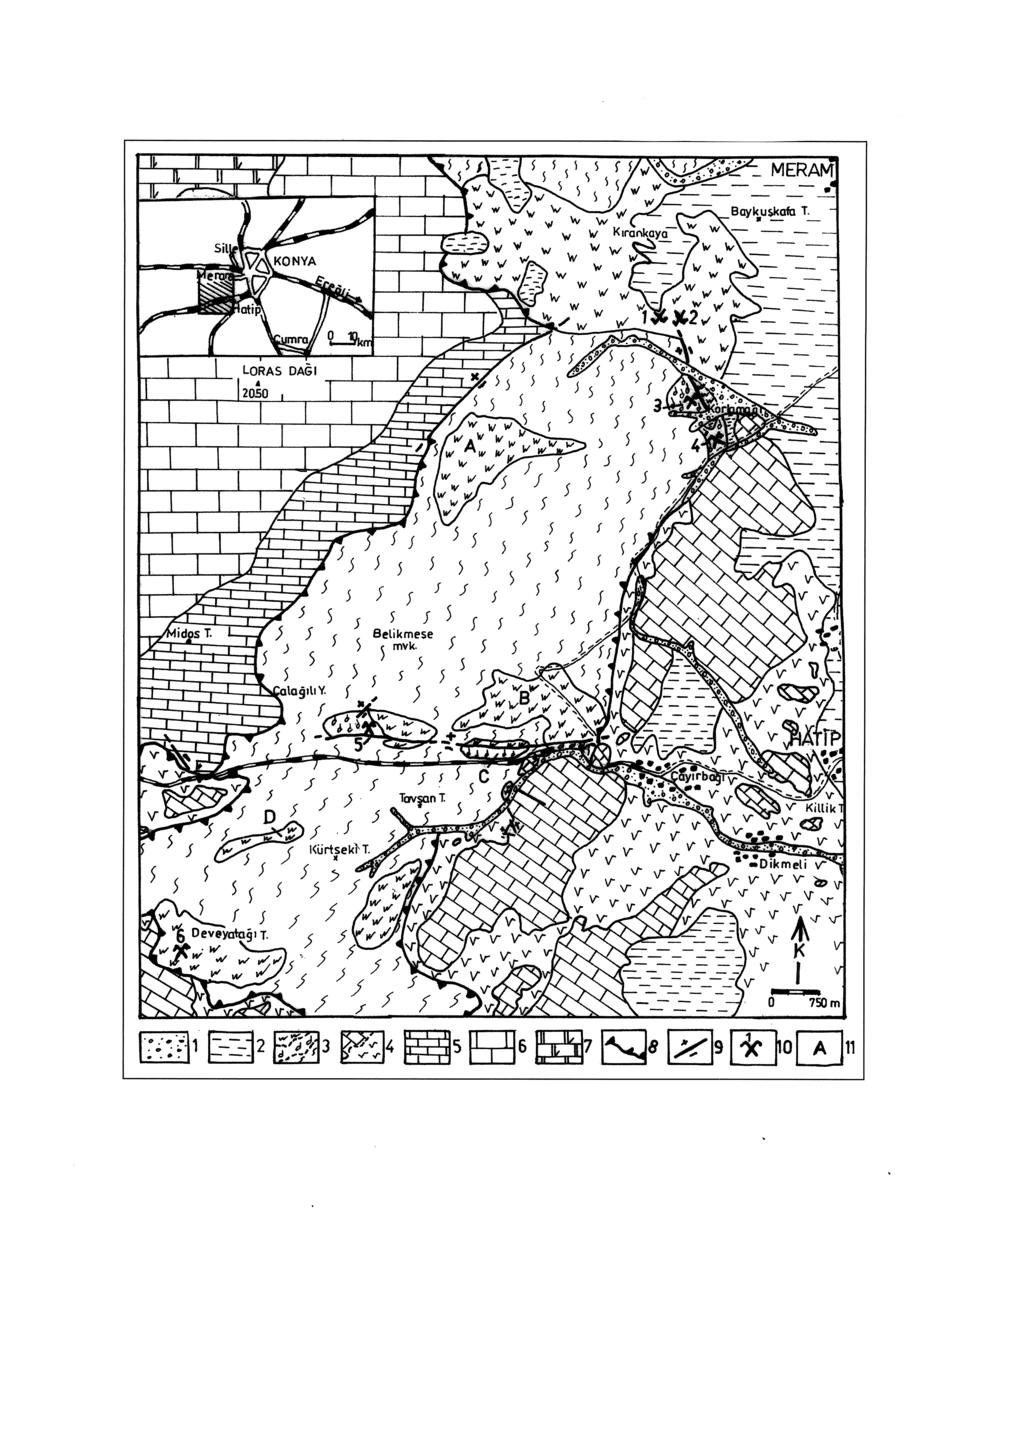 ÇAYIRBAĞI - MERAM MANYEZİTLERİNİN KÖKENİ ÜZERİNE Şekil 1: Çayırbağı-Meram (Konya) bölgesinin jeolojik ve yer buldum haritası. 1.Alüvyon (Kuvaterner); 2.Dereköy fm. (0. Miyosen-A. Pliyosen); 3.